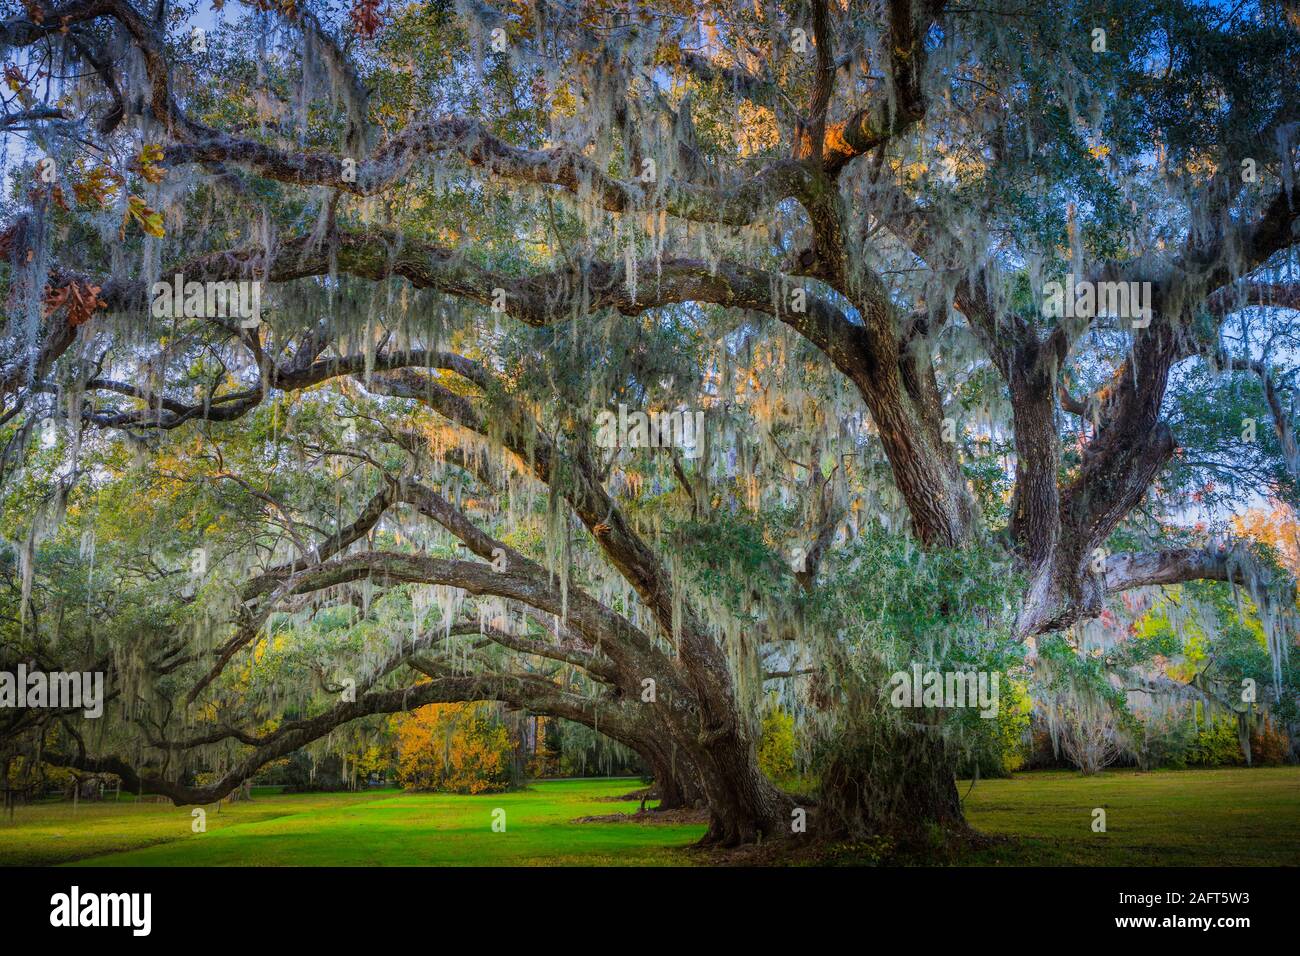 Magnolia Plantation and Gardens est une maison historique avec des jardins située sur la rivière Ashley à l'ouest d'Ashley, dans le comté de Charleston, en Caroline du Sud. Banque D'Images